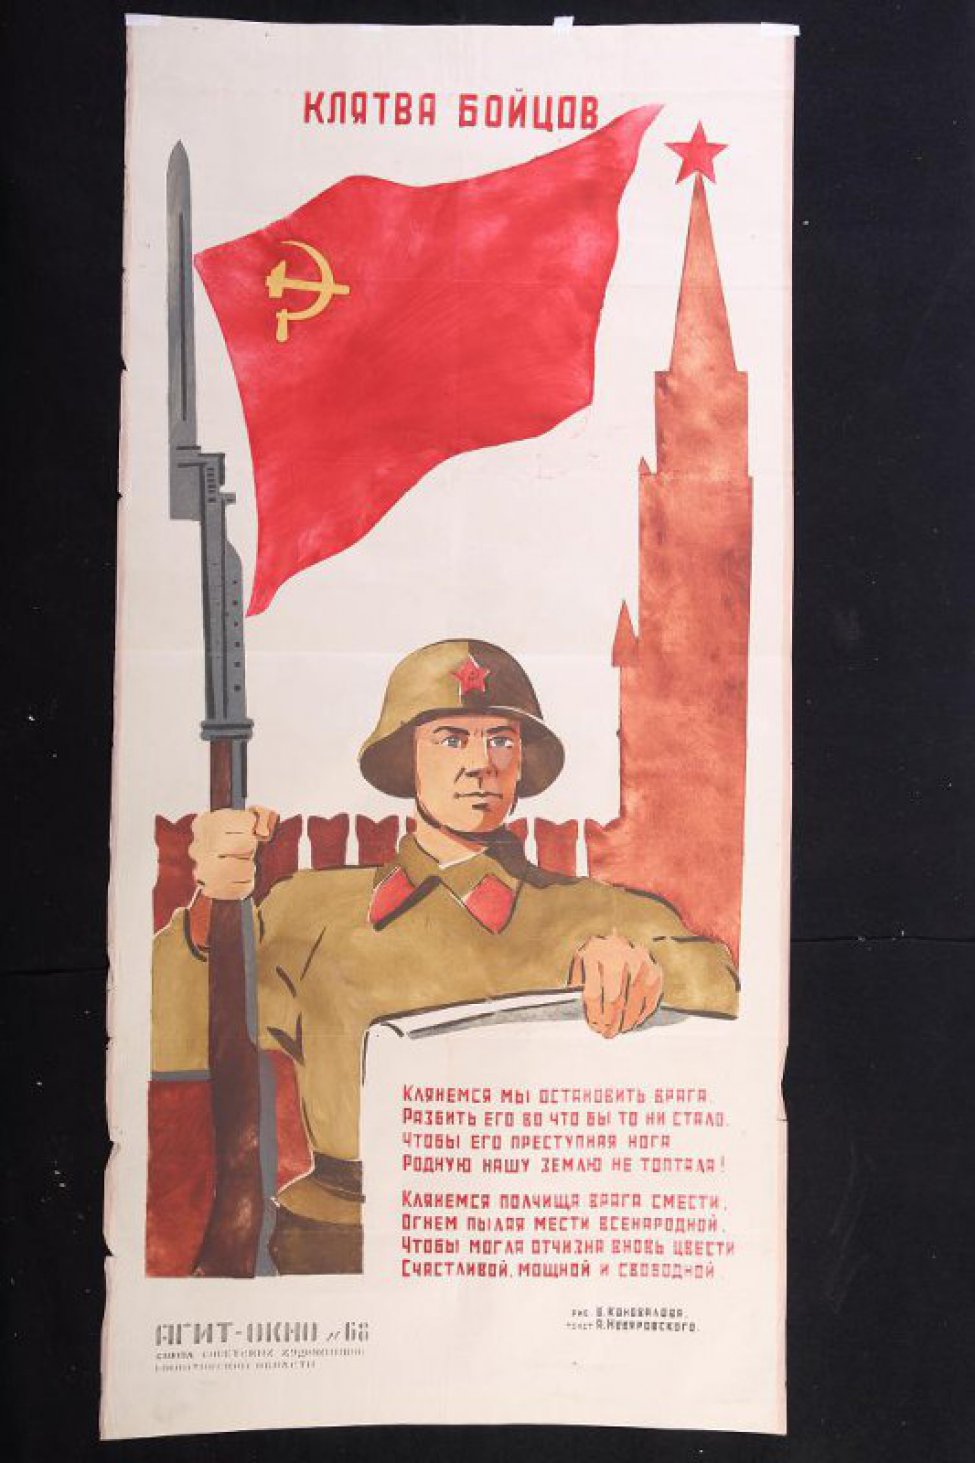 Изображено: советский боец с винтовкой, к штыку которой прикреплен красный флаг, стоит на фоне Кремля, в левой руке держит лист с текстом клятвы:" Клянемся мы остановить врага..."